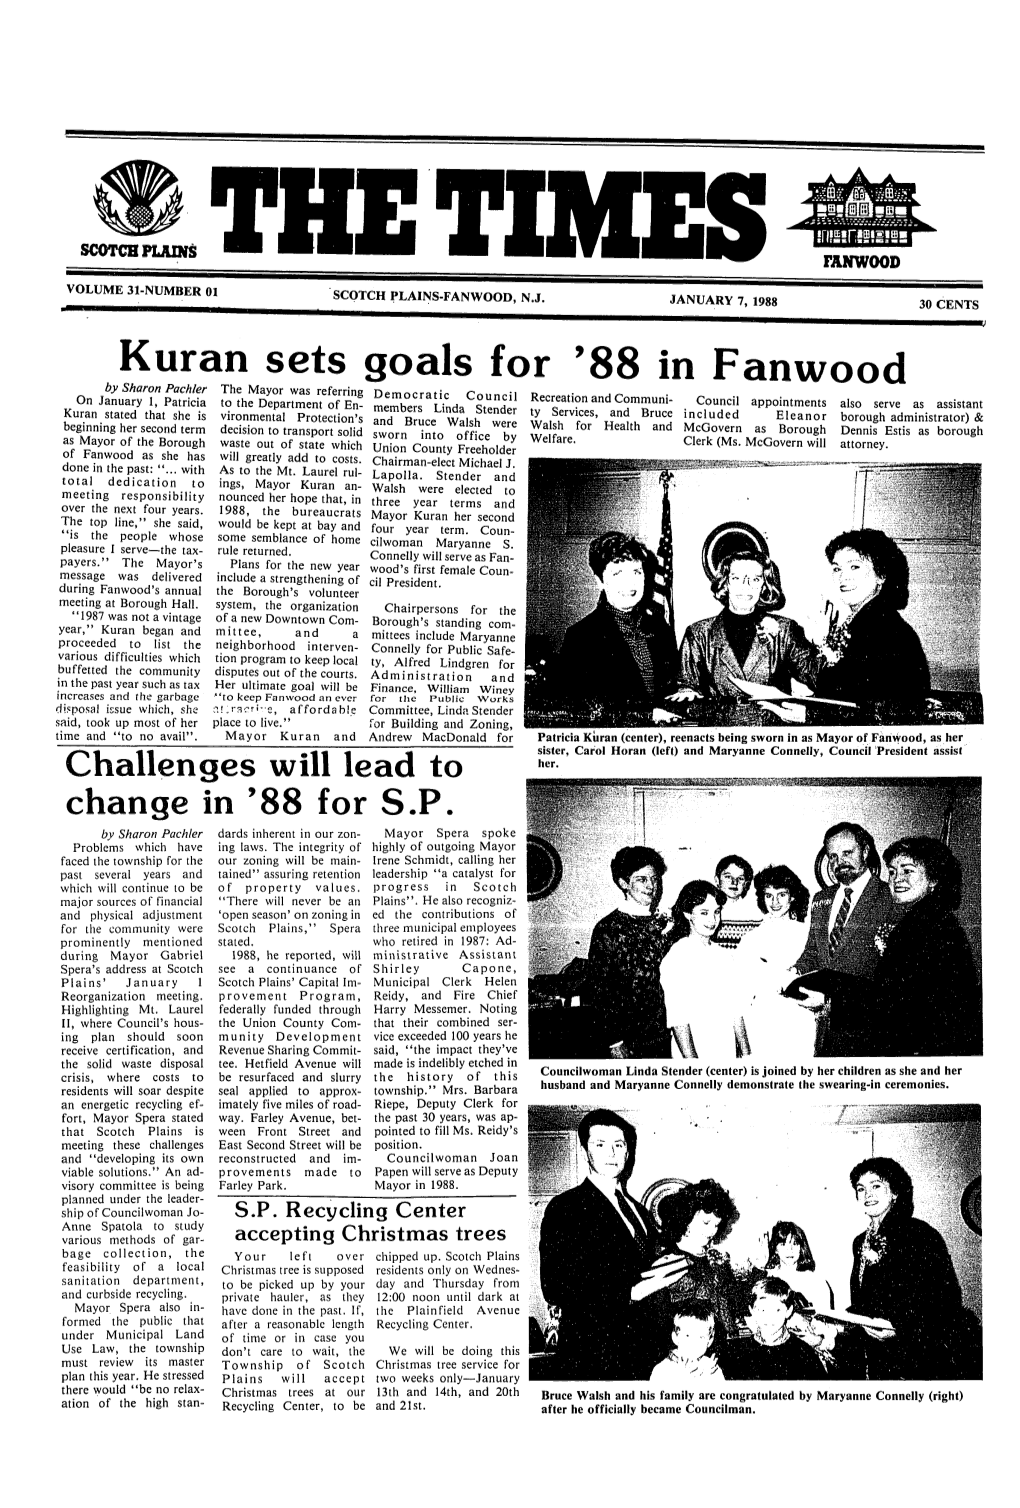 Kuran Sets Goals for '88 in Fanwood